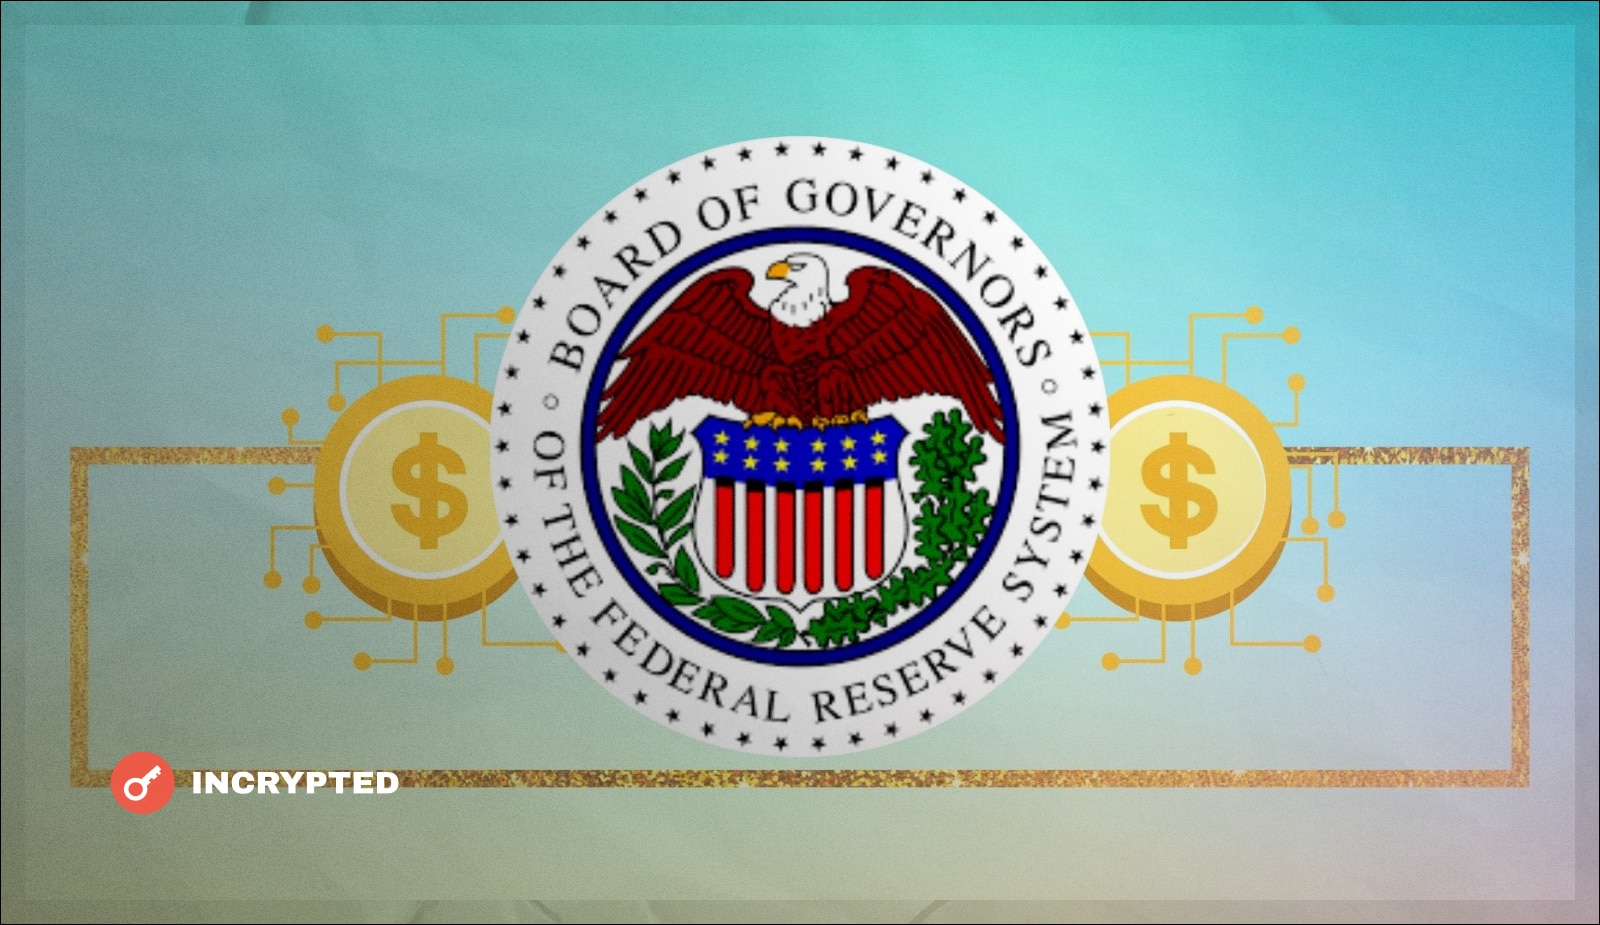 ФРС: CBDC может повлиять на денежно-кредитную политику США. Заглавный коллаж новости.